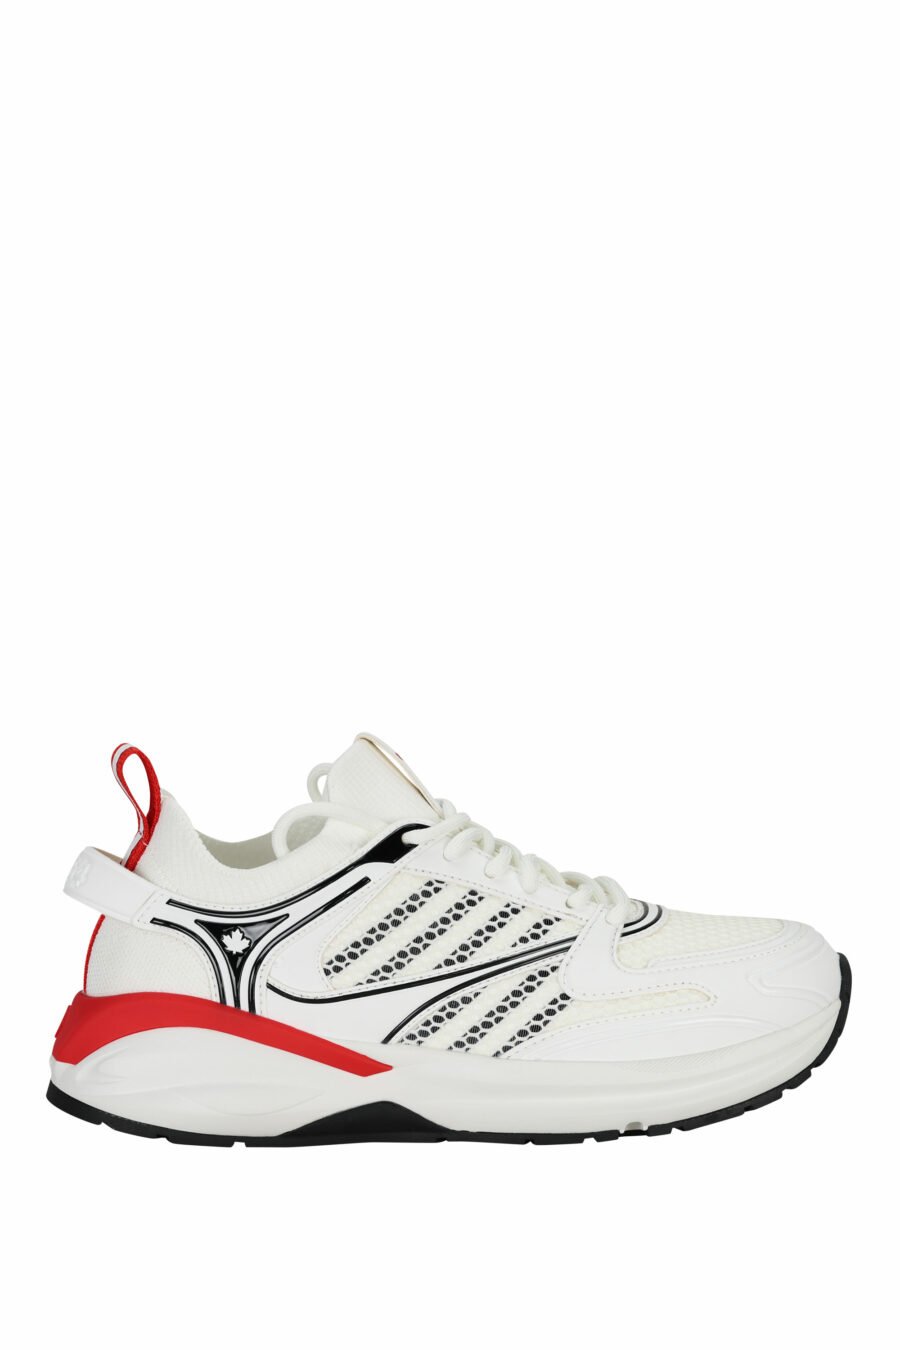 Zapatillas blancas "dash" con rojo - 805777318317